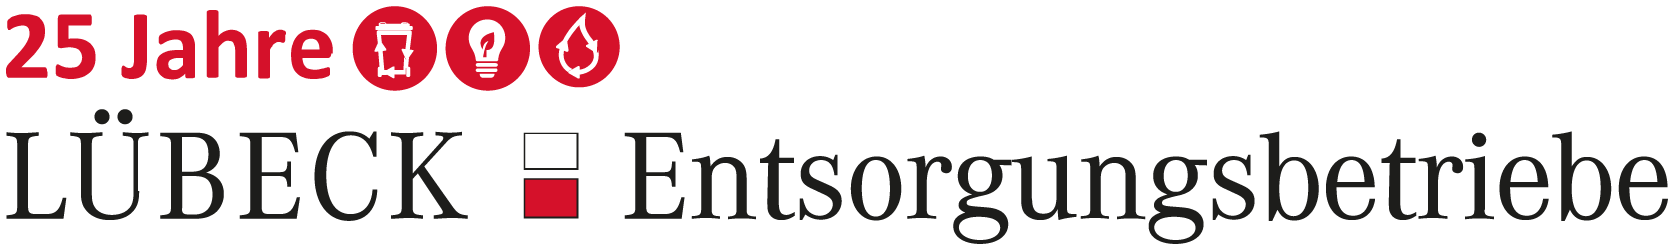 Logo_Lübeck-Entsorgungsbetrieb